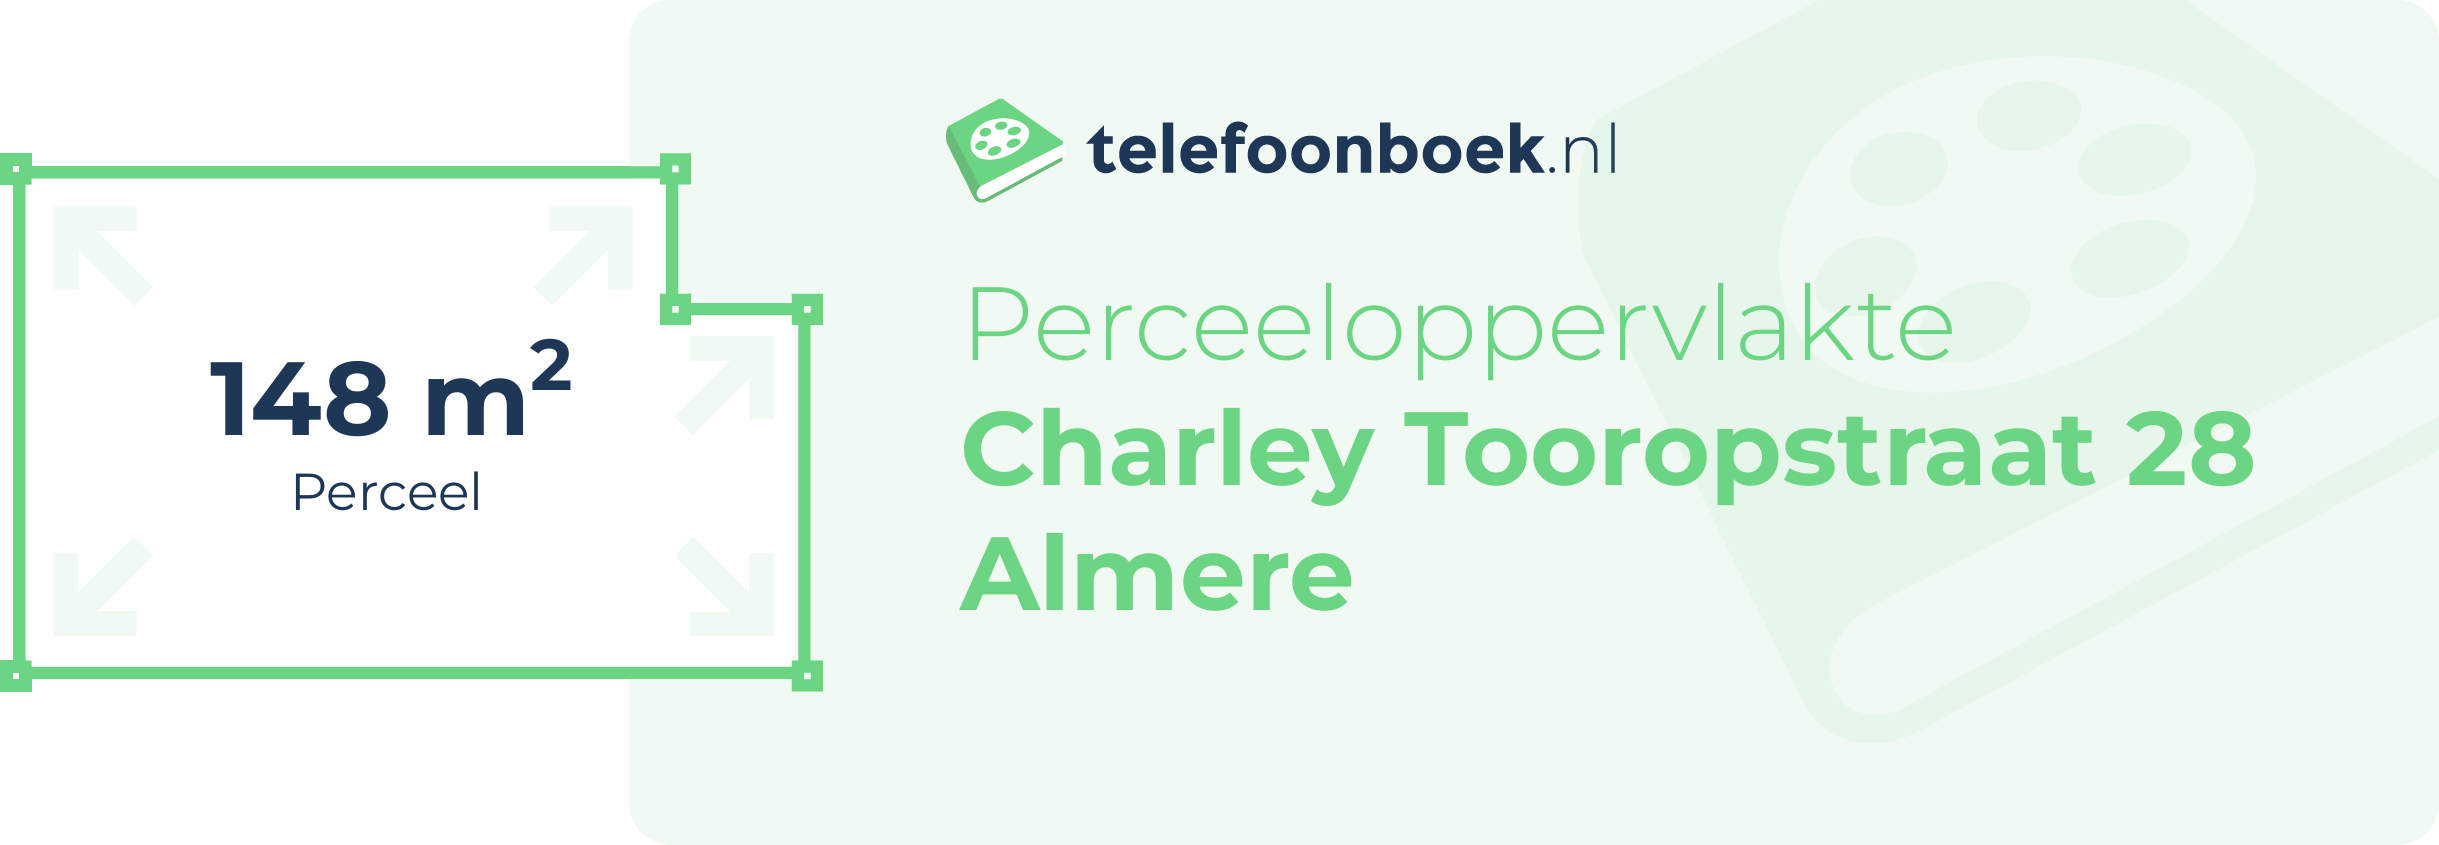 Perceeloppervlakte Charley Tooropstraat 28 Almere